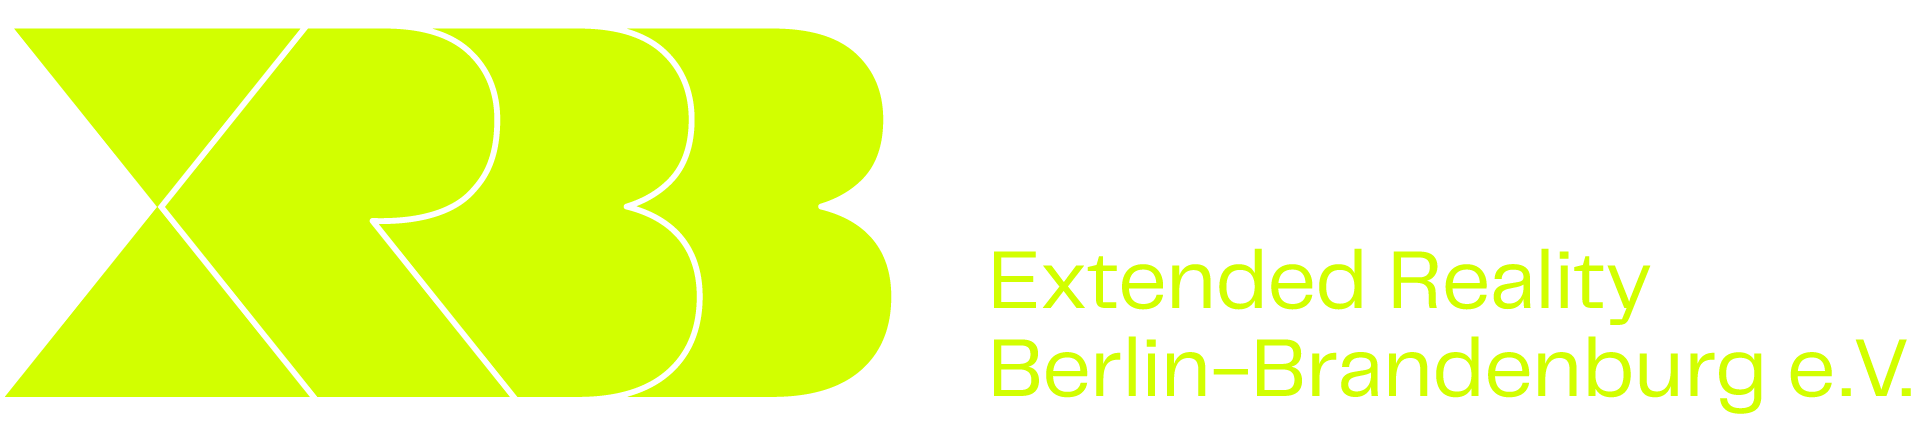 XRBB - Extended Reality Berlin-Brandenburg e.V.